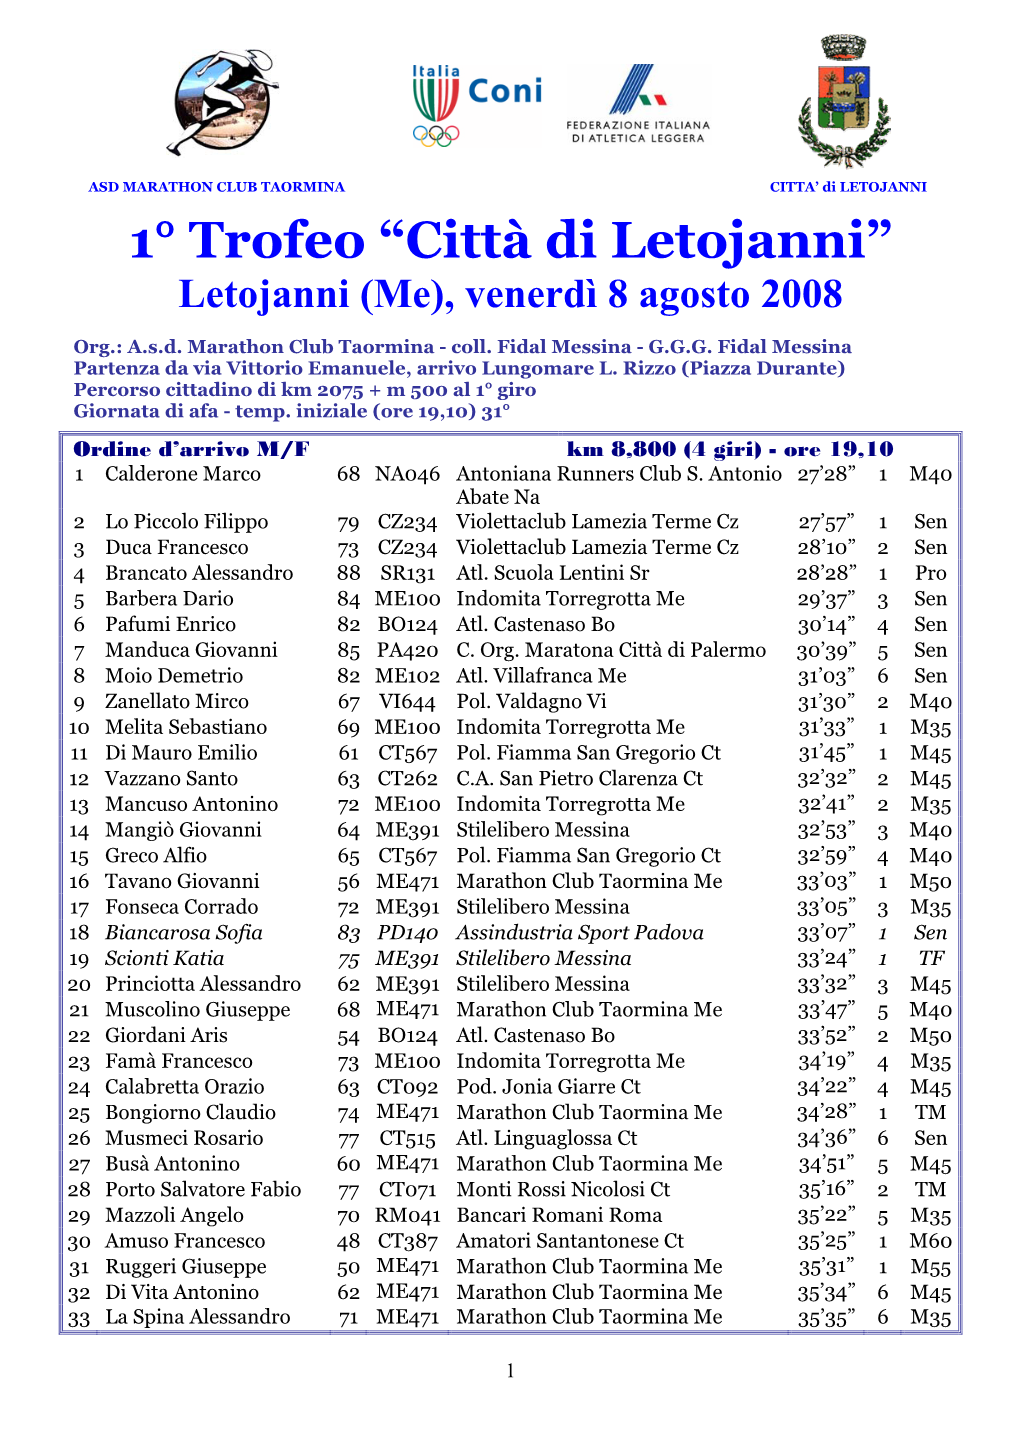 1° Trofeo “Città Di Letojanni” Letojanni (Me), Venerdì 8 Agosto 2008